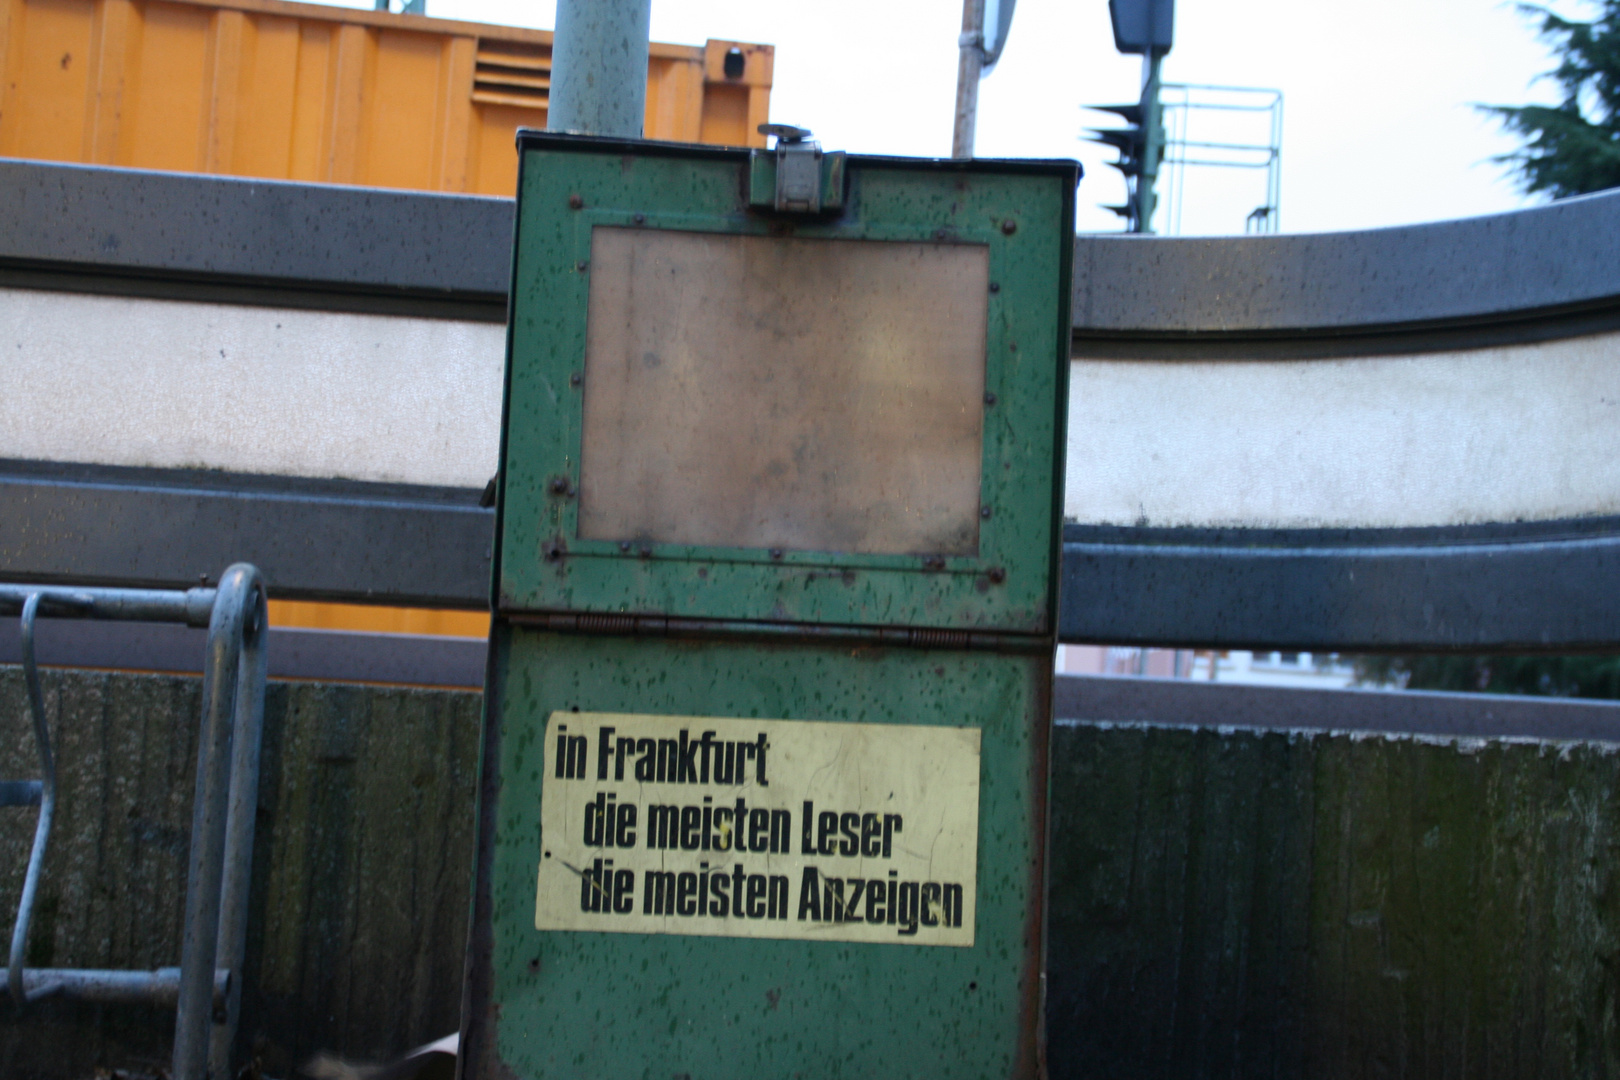 In Frankfurt die meisten Leser, die meisten Anzeigen.